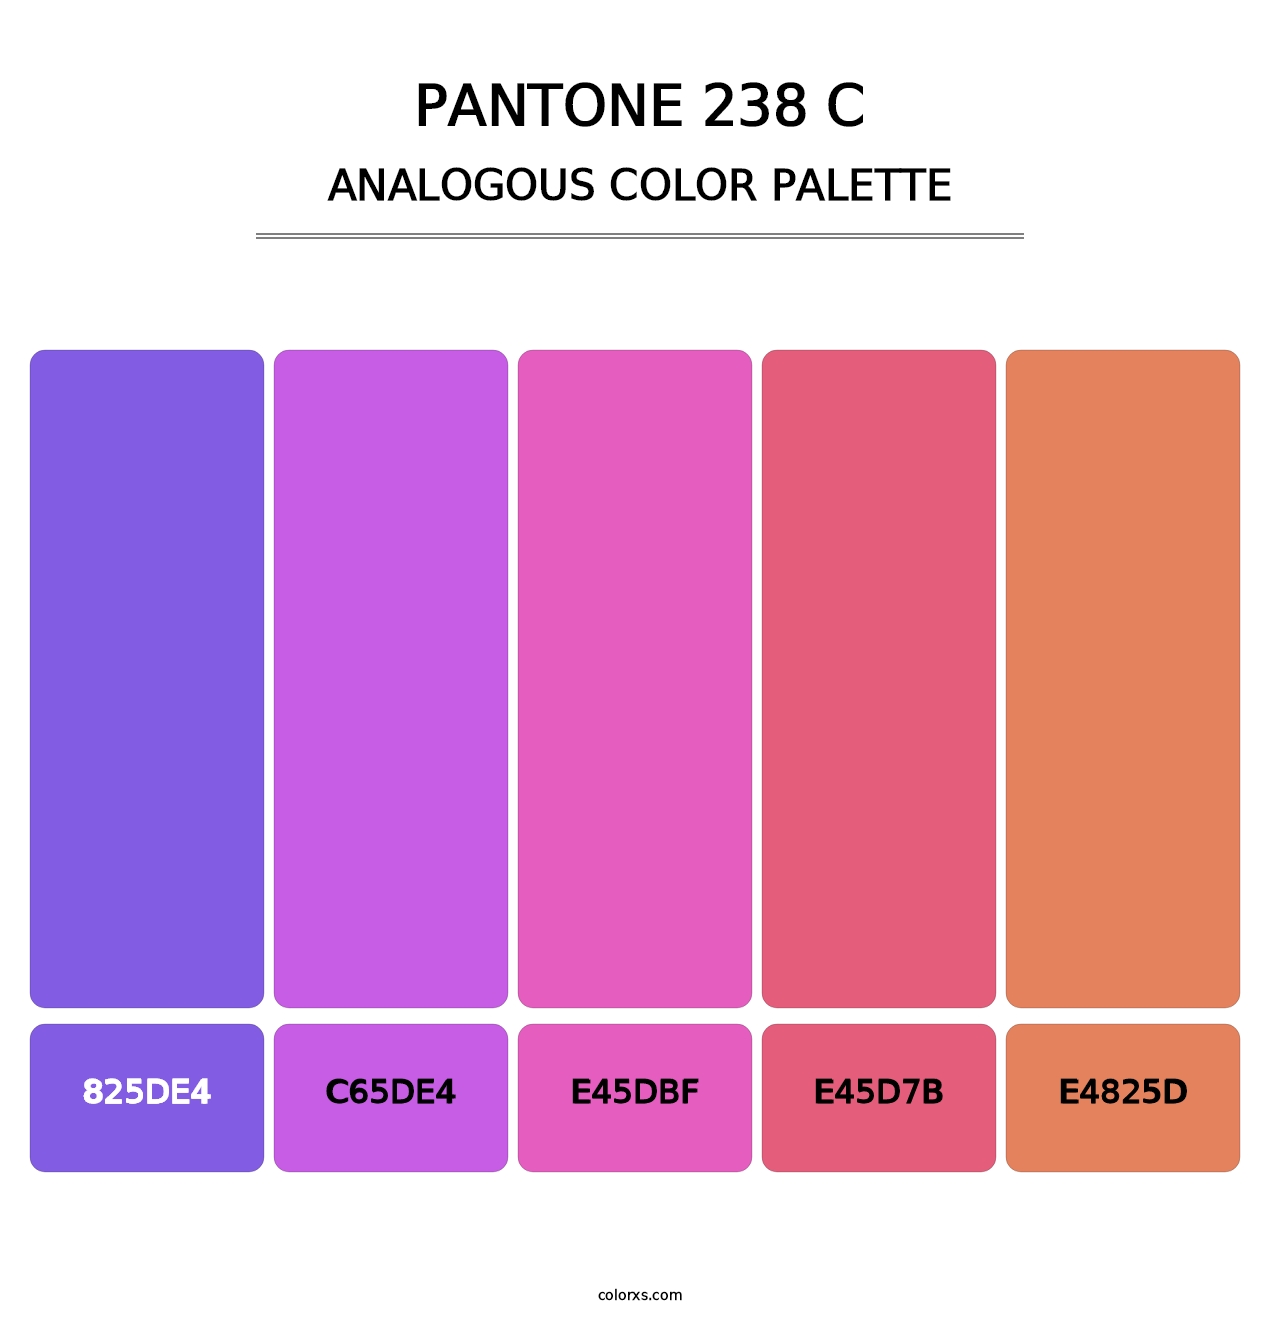 PANTONE 238 C - Analogous Color Palette